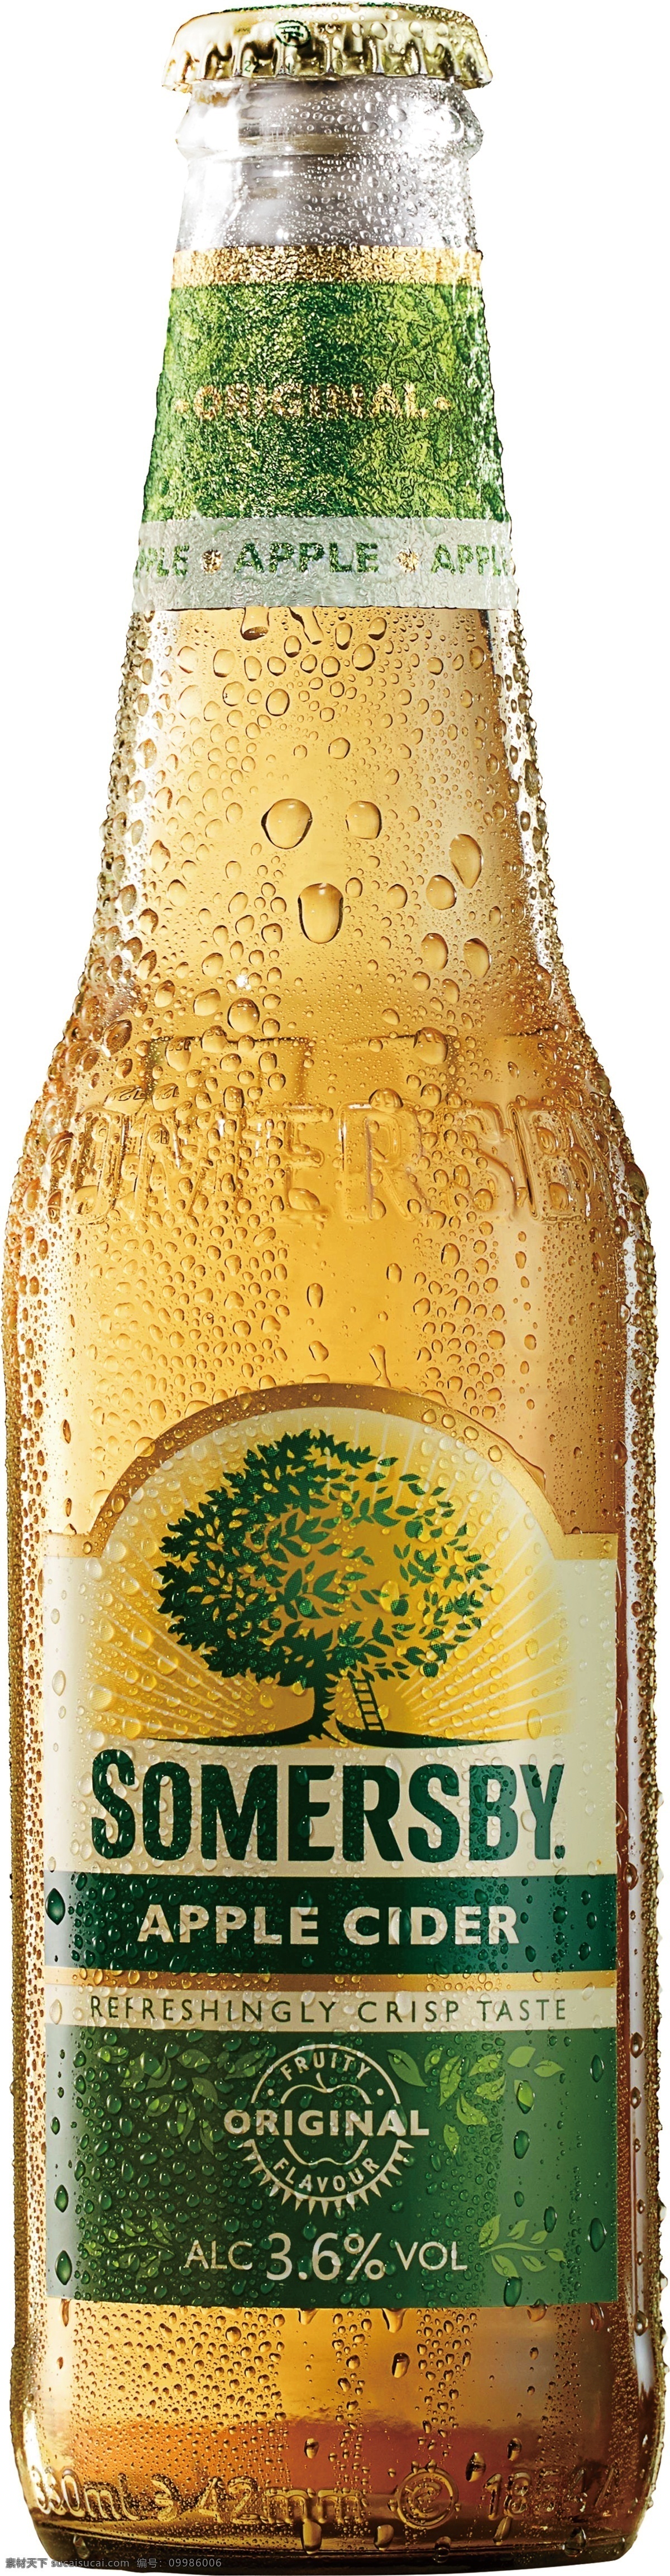 嘉士伯 苹果 汽酒 瓶子 水珠 苹果汽酒 啤酒瓶 标志 啤酒效果